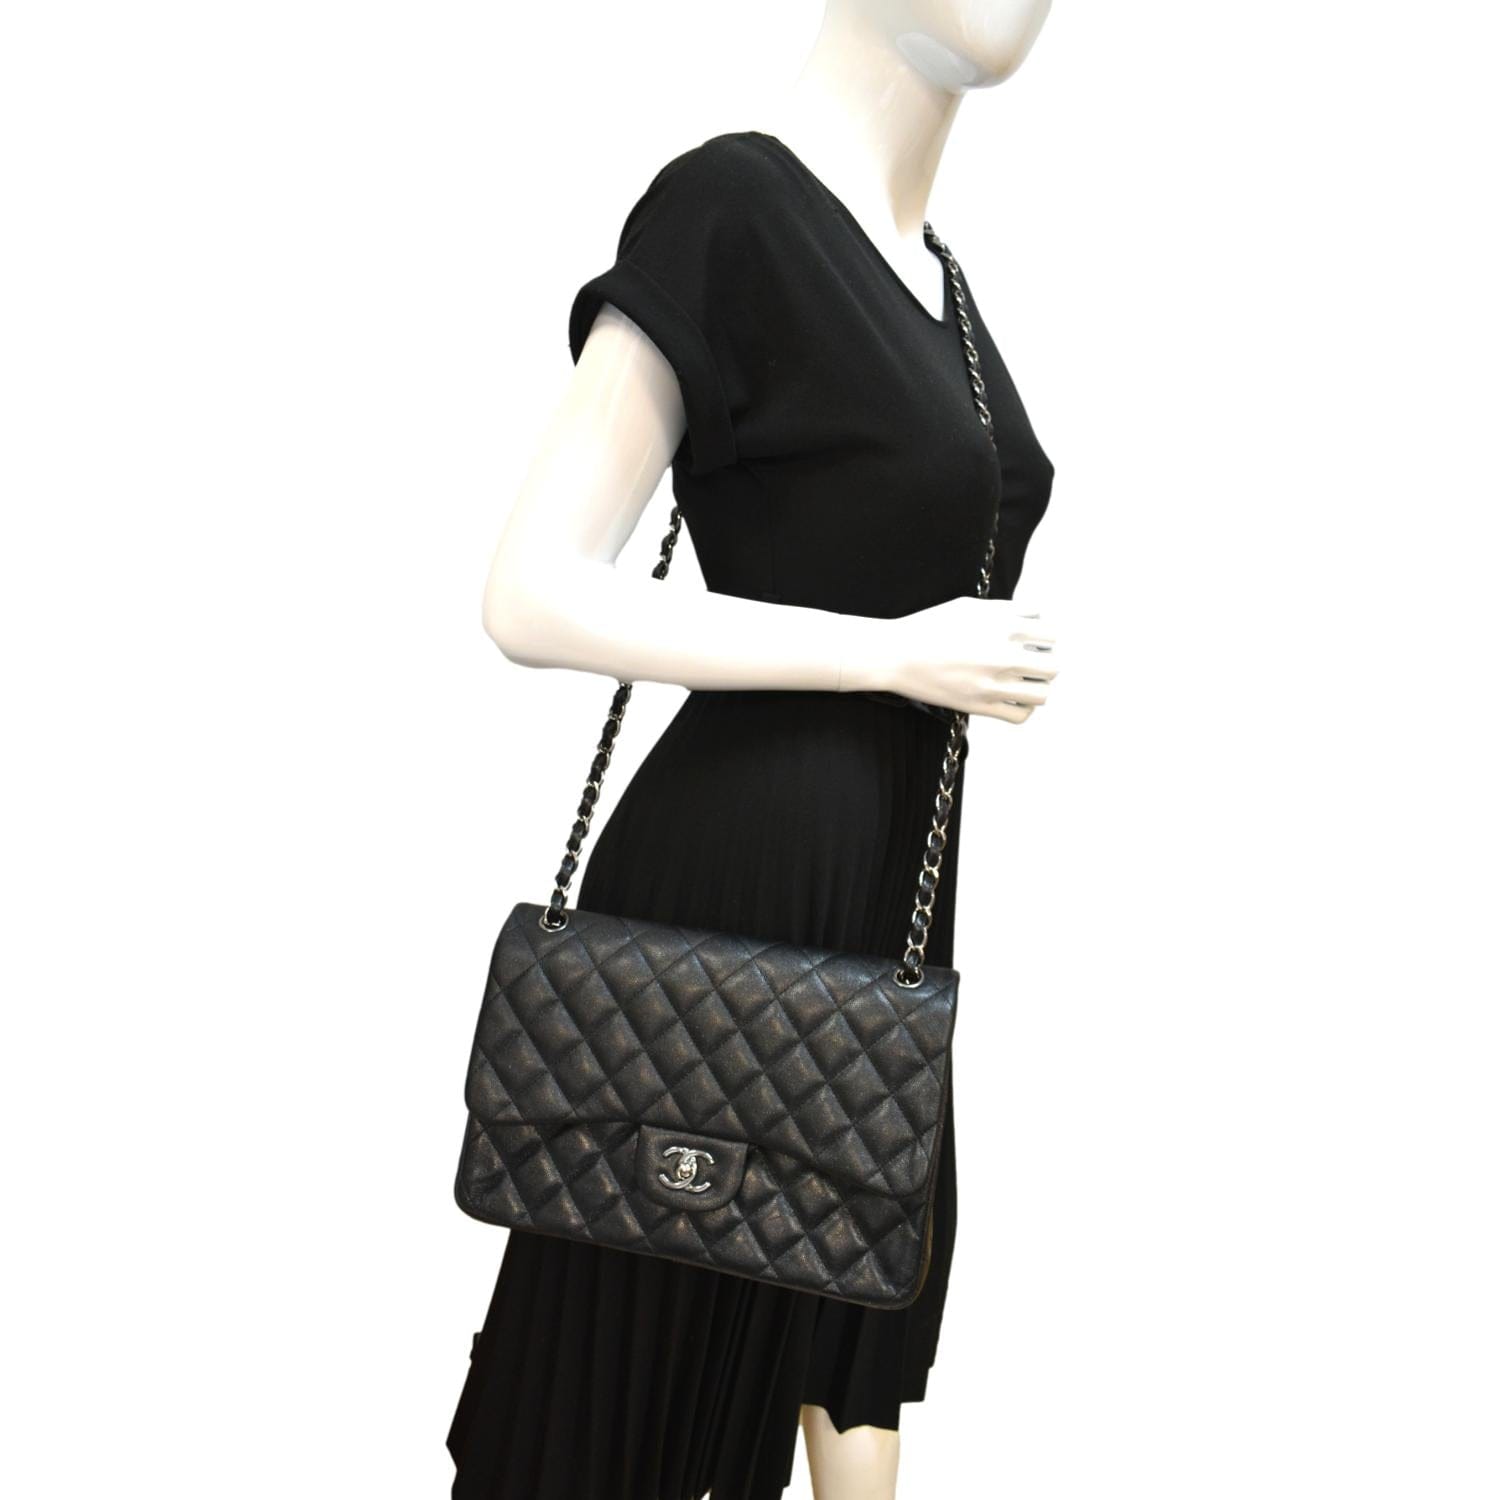 Chanel Bag Flap Flat Black Caviar Clutch / Shoulder Bag